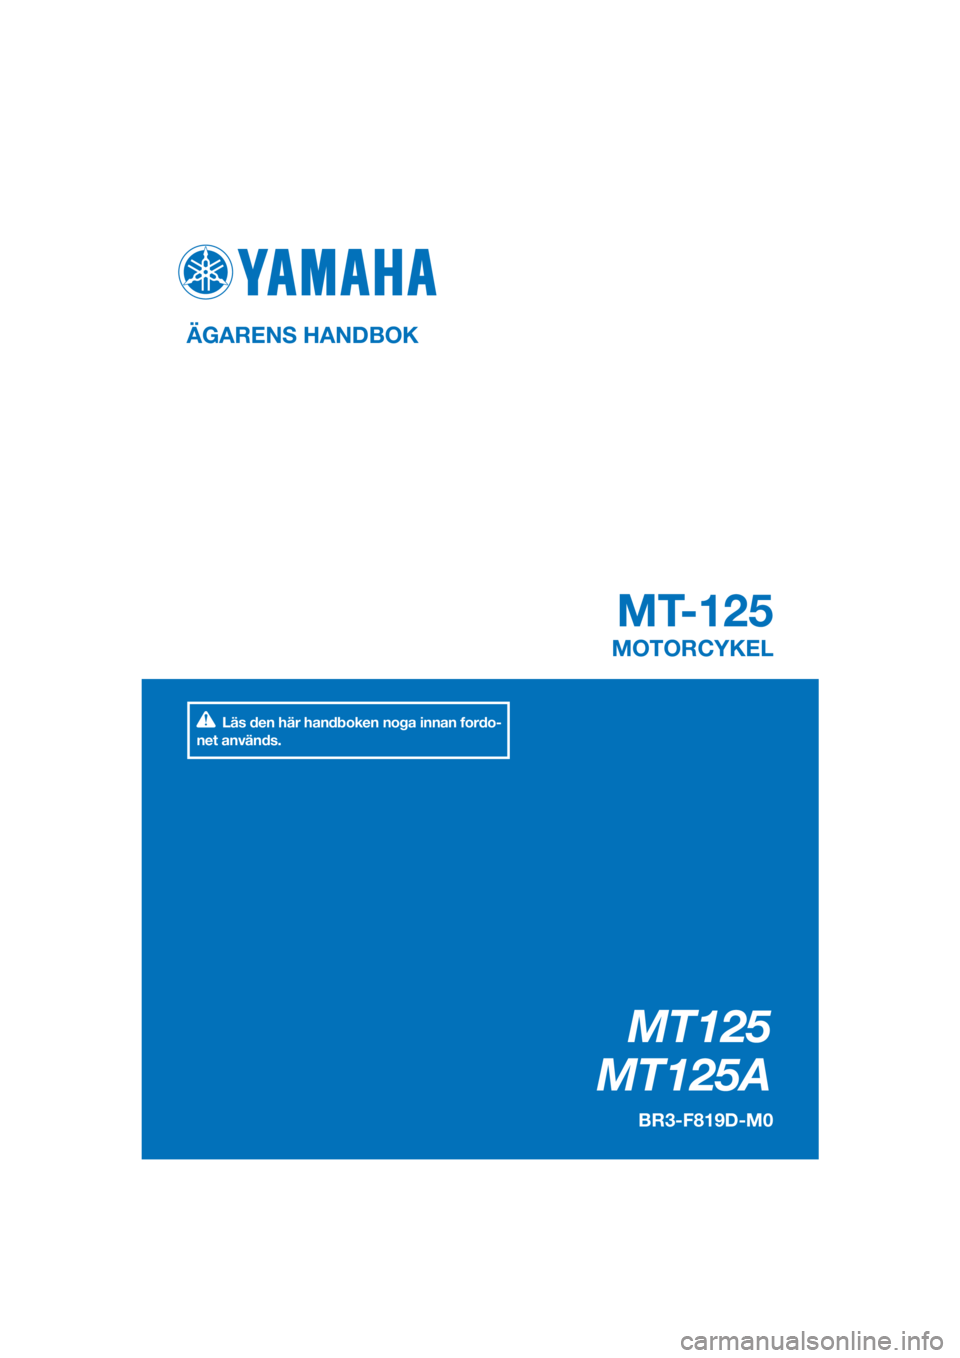 YAMAHA MT-125 2016  Bruksanvisningar (in Swedish) PANTONE285C
MT125
MT125A
MT-125
ÄGARENS HANDBOK
BR3-F819D-M0
MOTORCYKEL
[Swedish  (M)]
Läs den här handboken noga innan fordo-
net används. 